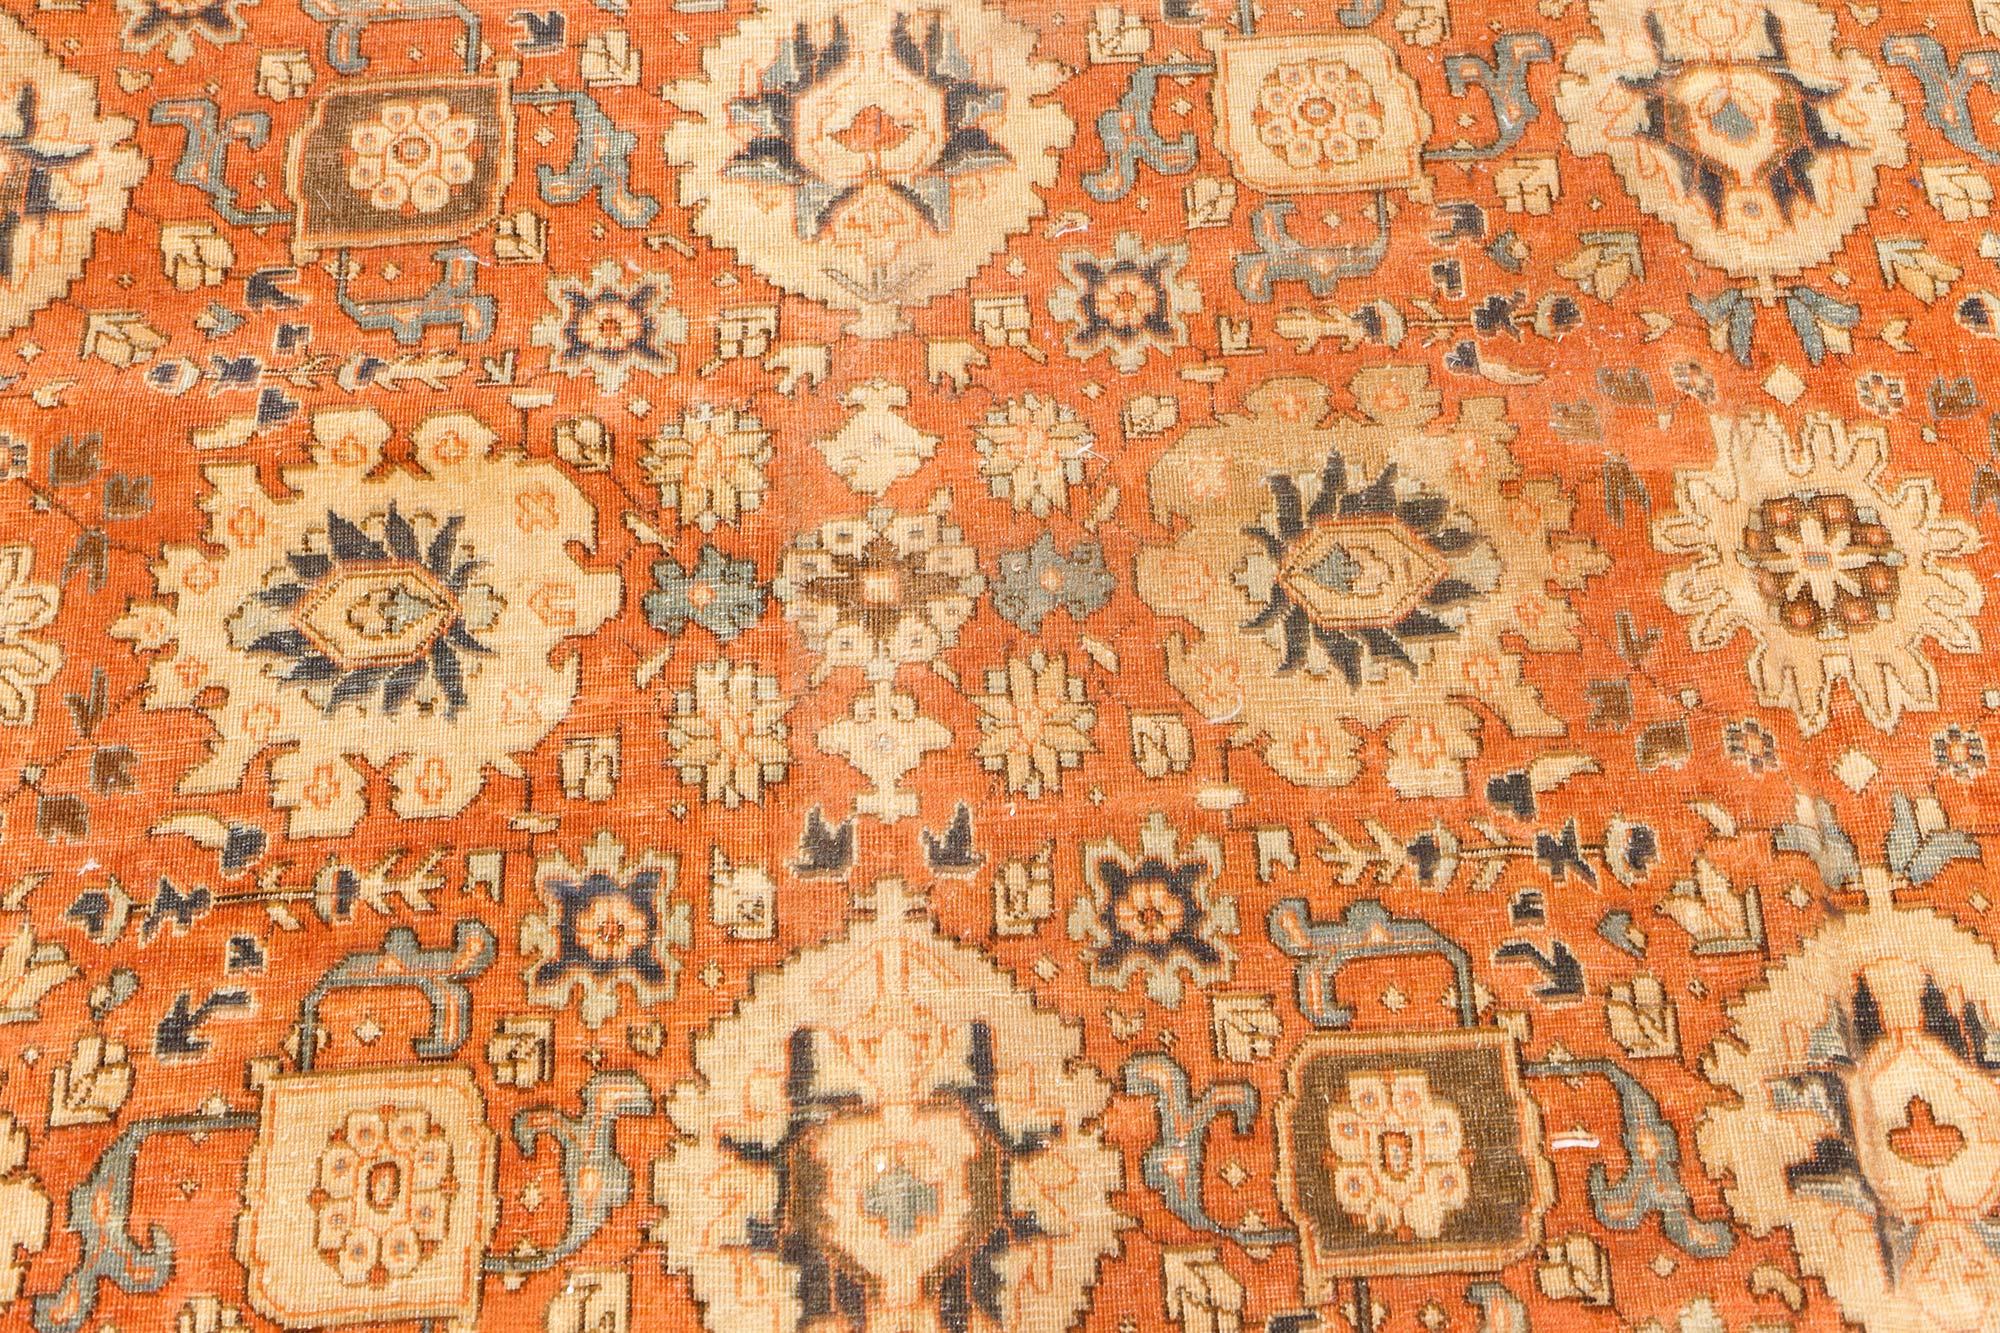 Authentique tapis persan en laine rouge de Tabriz fait à la main
Taille : 10'2